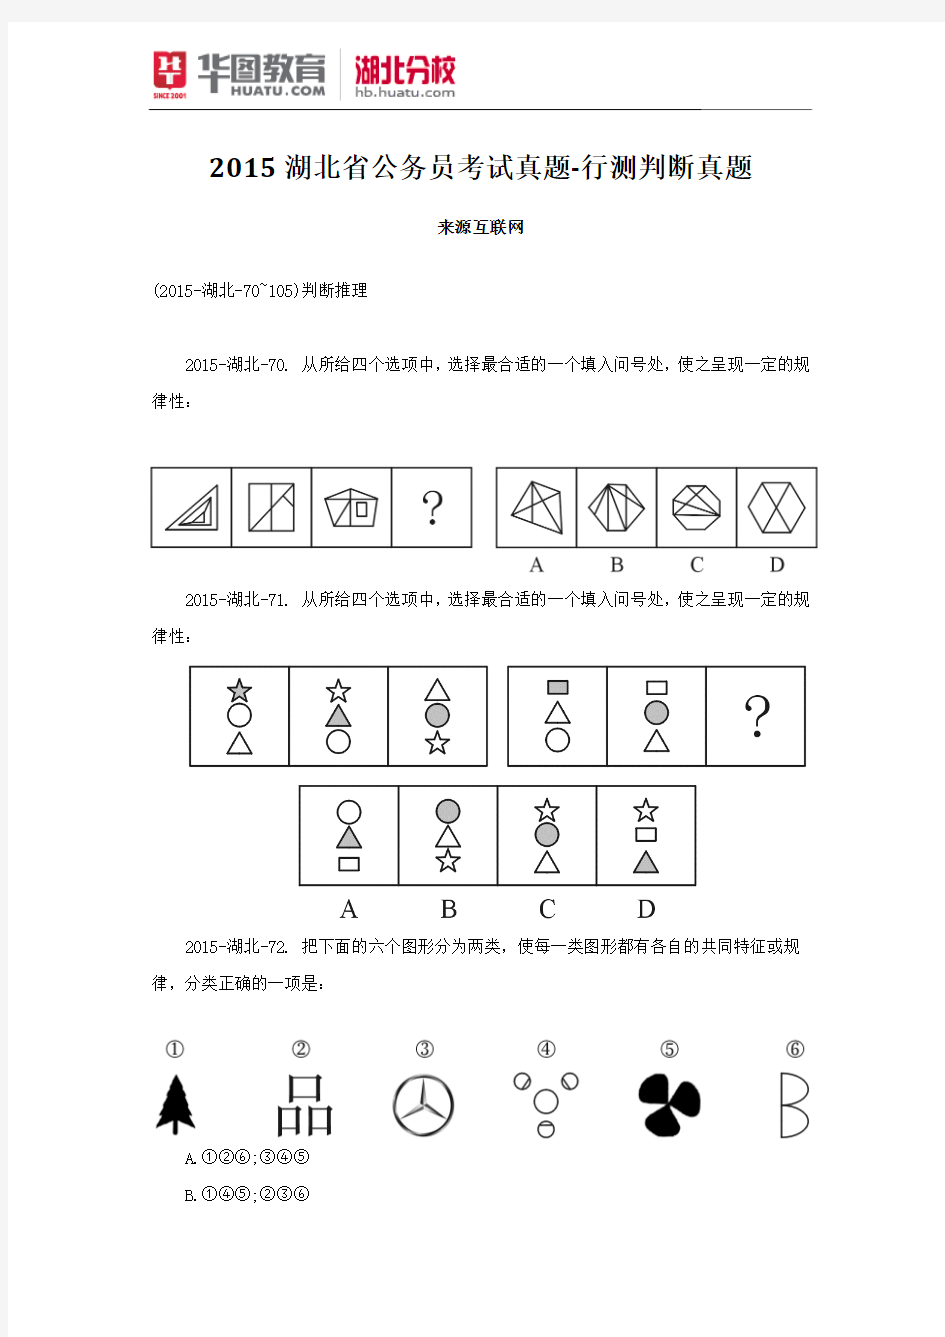 2015湖北省公务员考试真题-行测判断真题